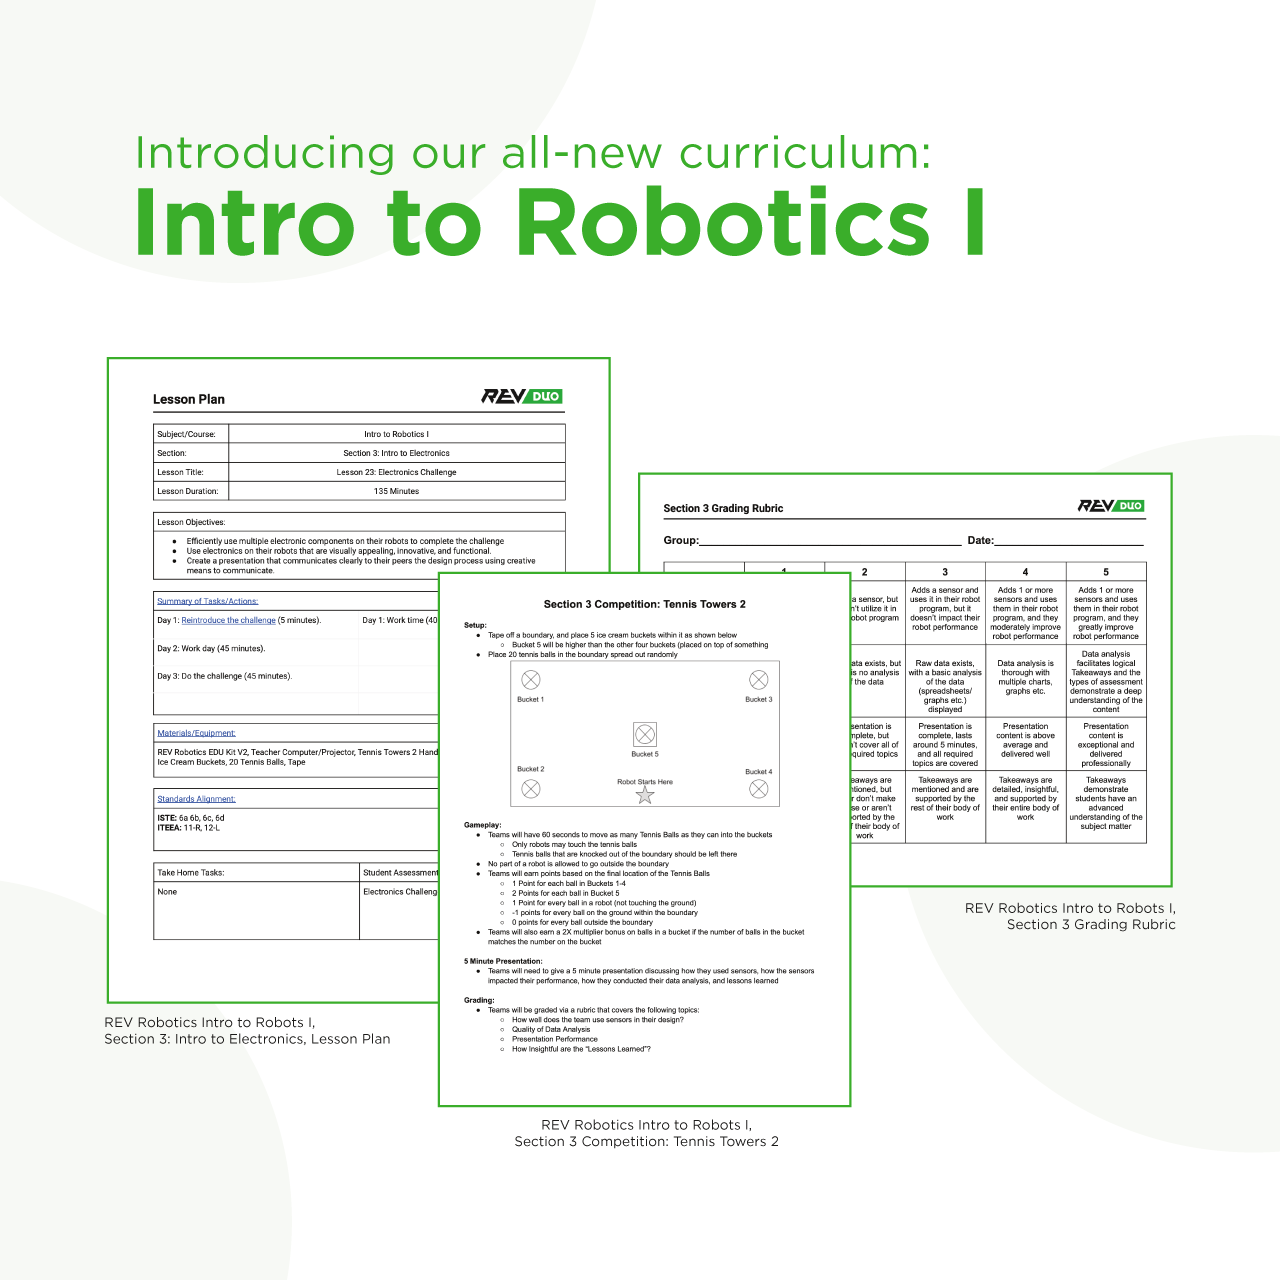 Intro to Robotics I Curriculum